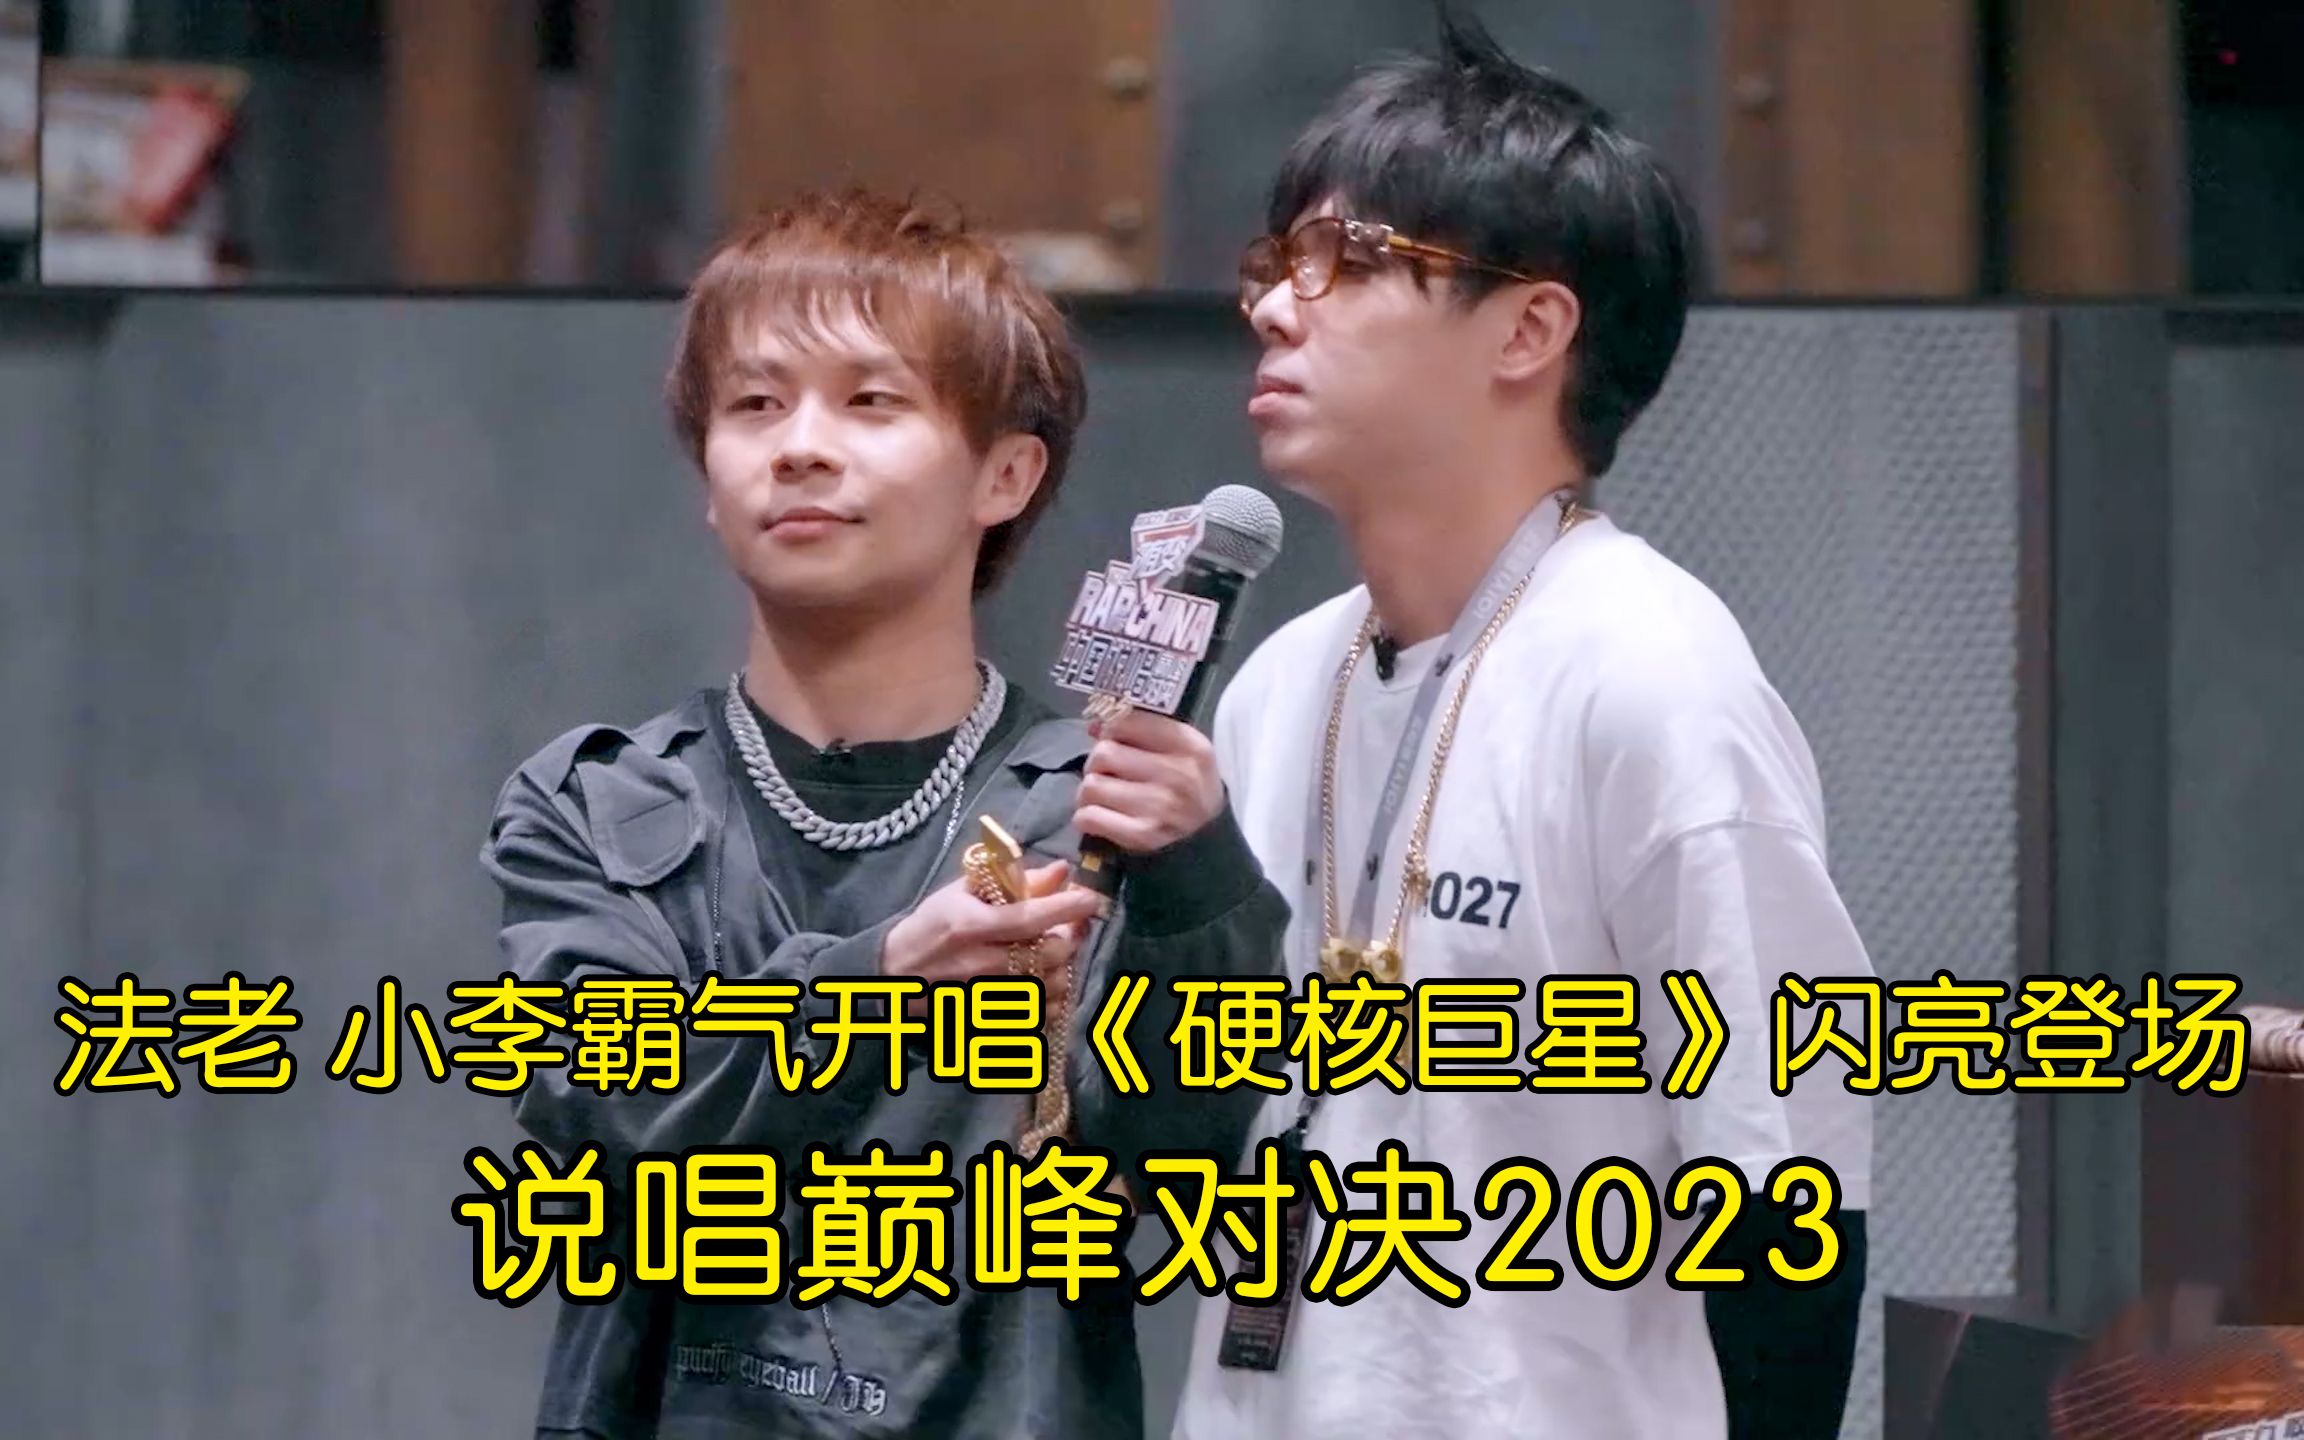 法老 小李霸气开唱《硬核巨星》闪亮登场  中国说唱巅峰对决2023